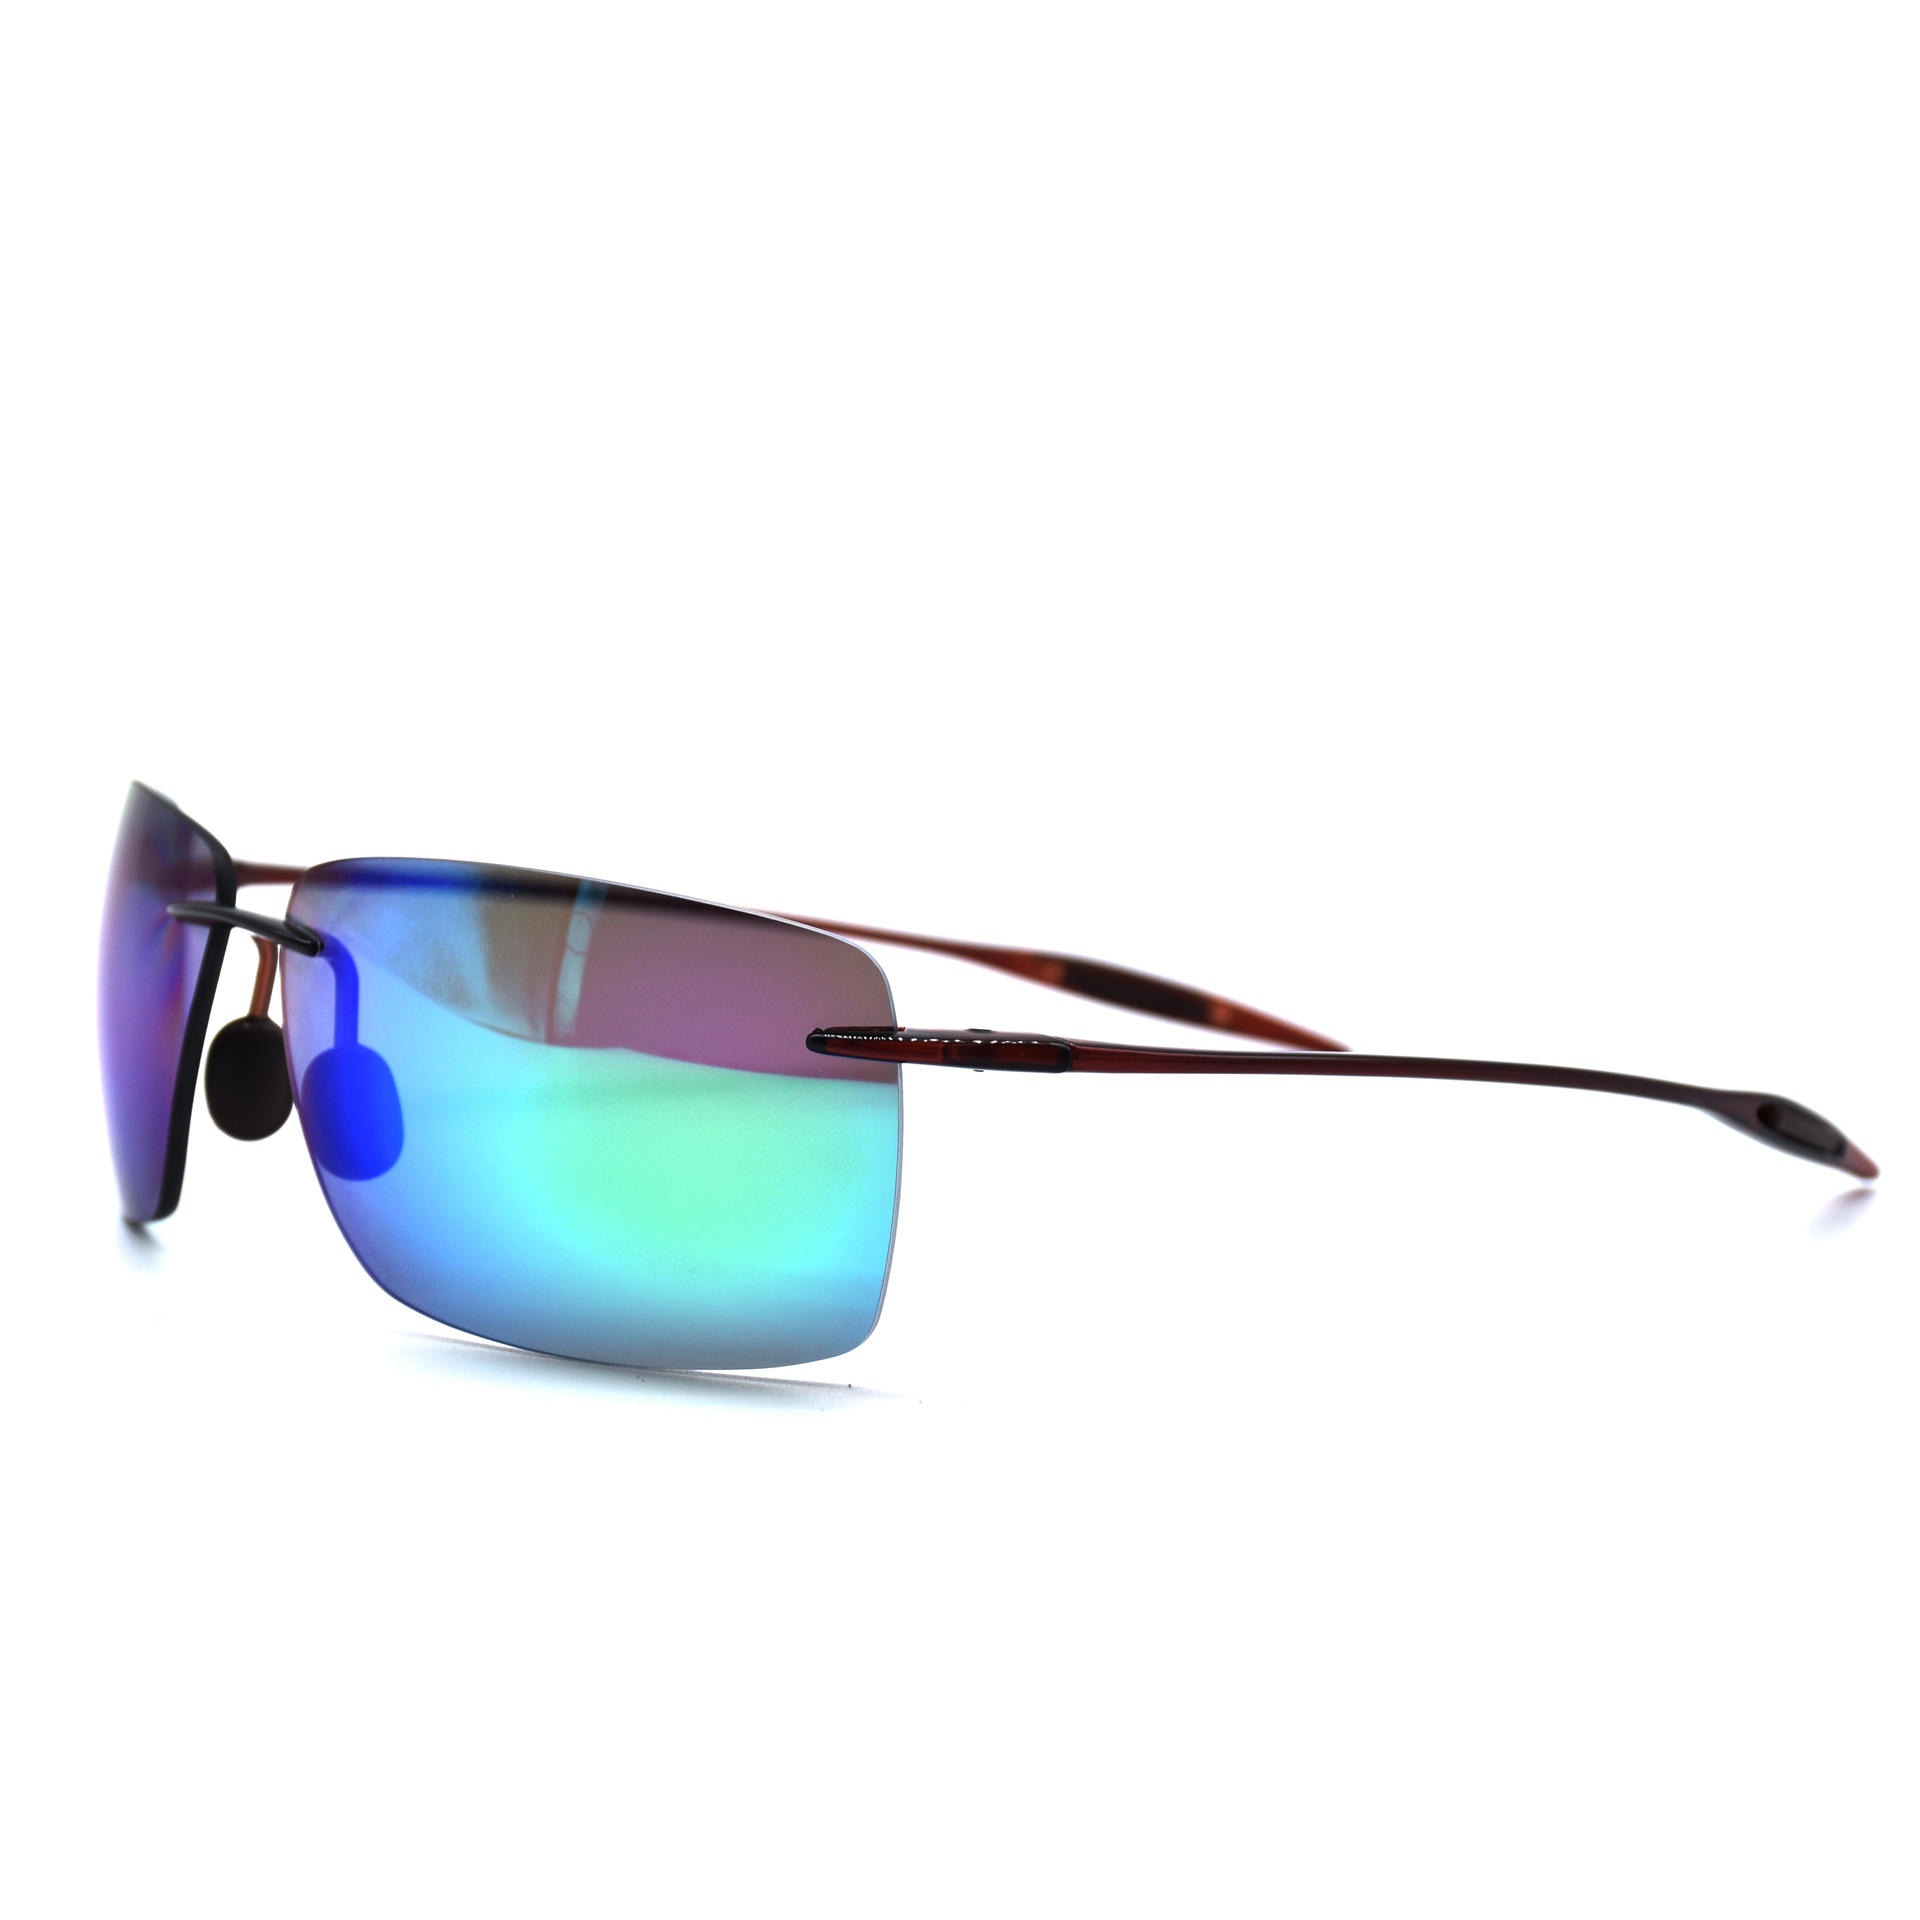 TR90超轻无框偏光太阳眼镜 休闲时尚太阳眼镜 骑行跑步防风眼镜5